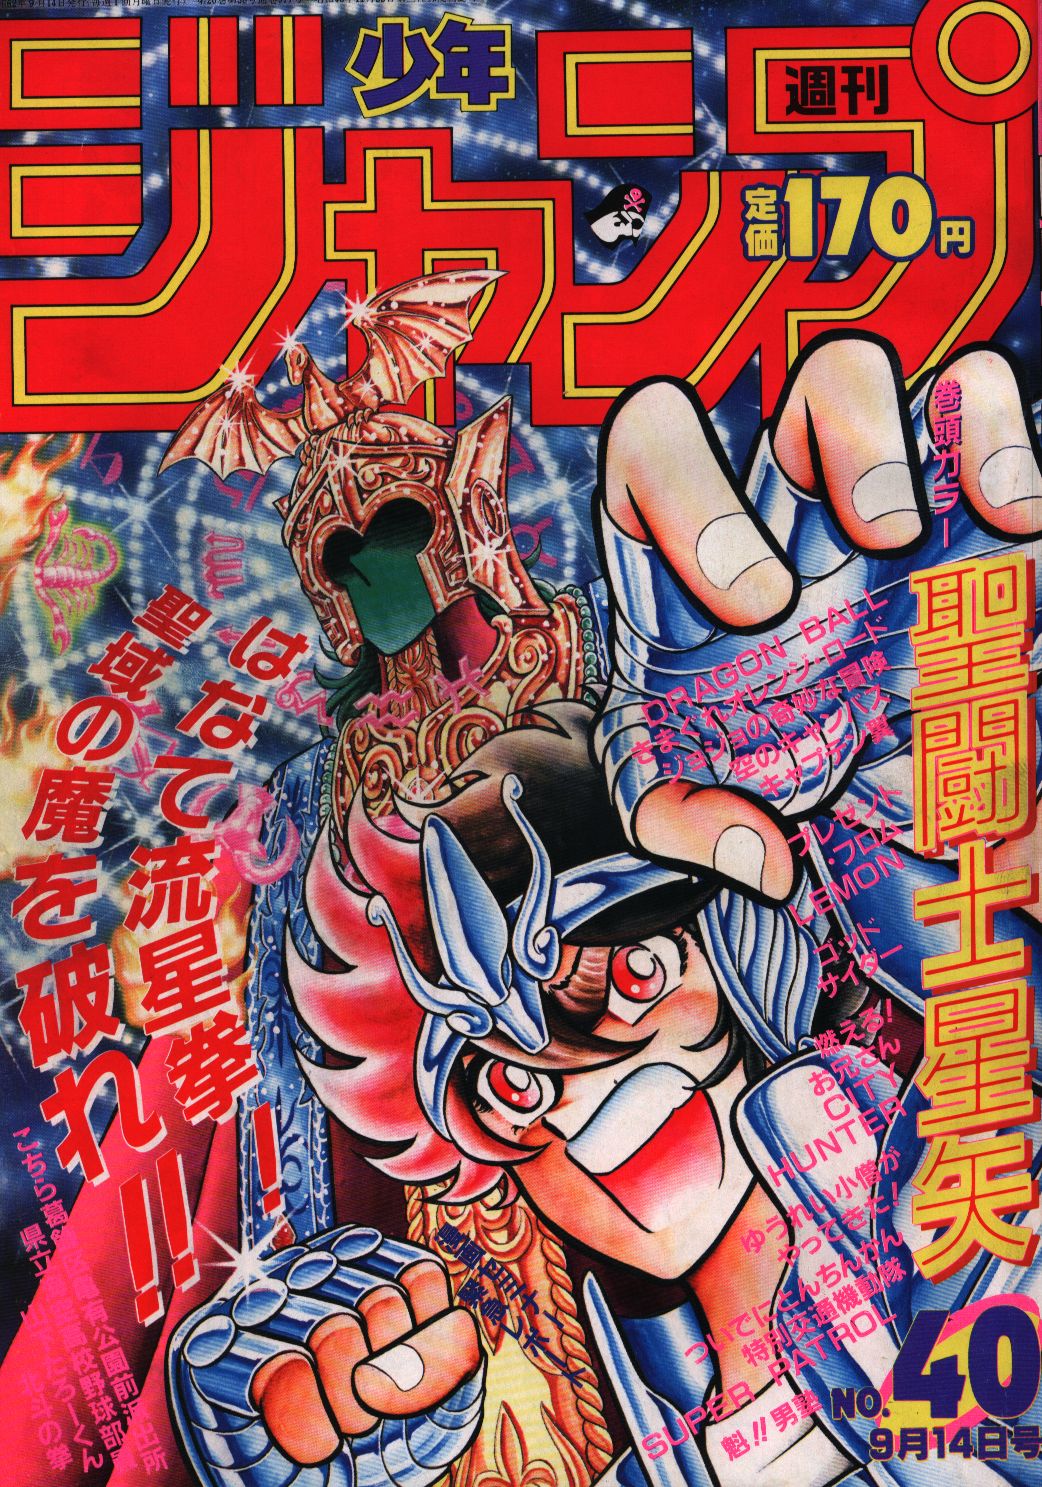 1987年 少年ジャンプ 40号 聖闘士星矢 表紙